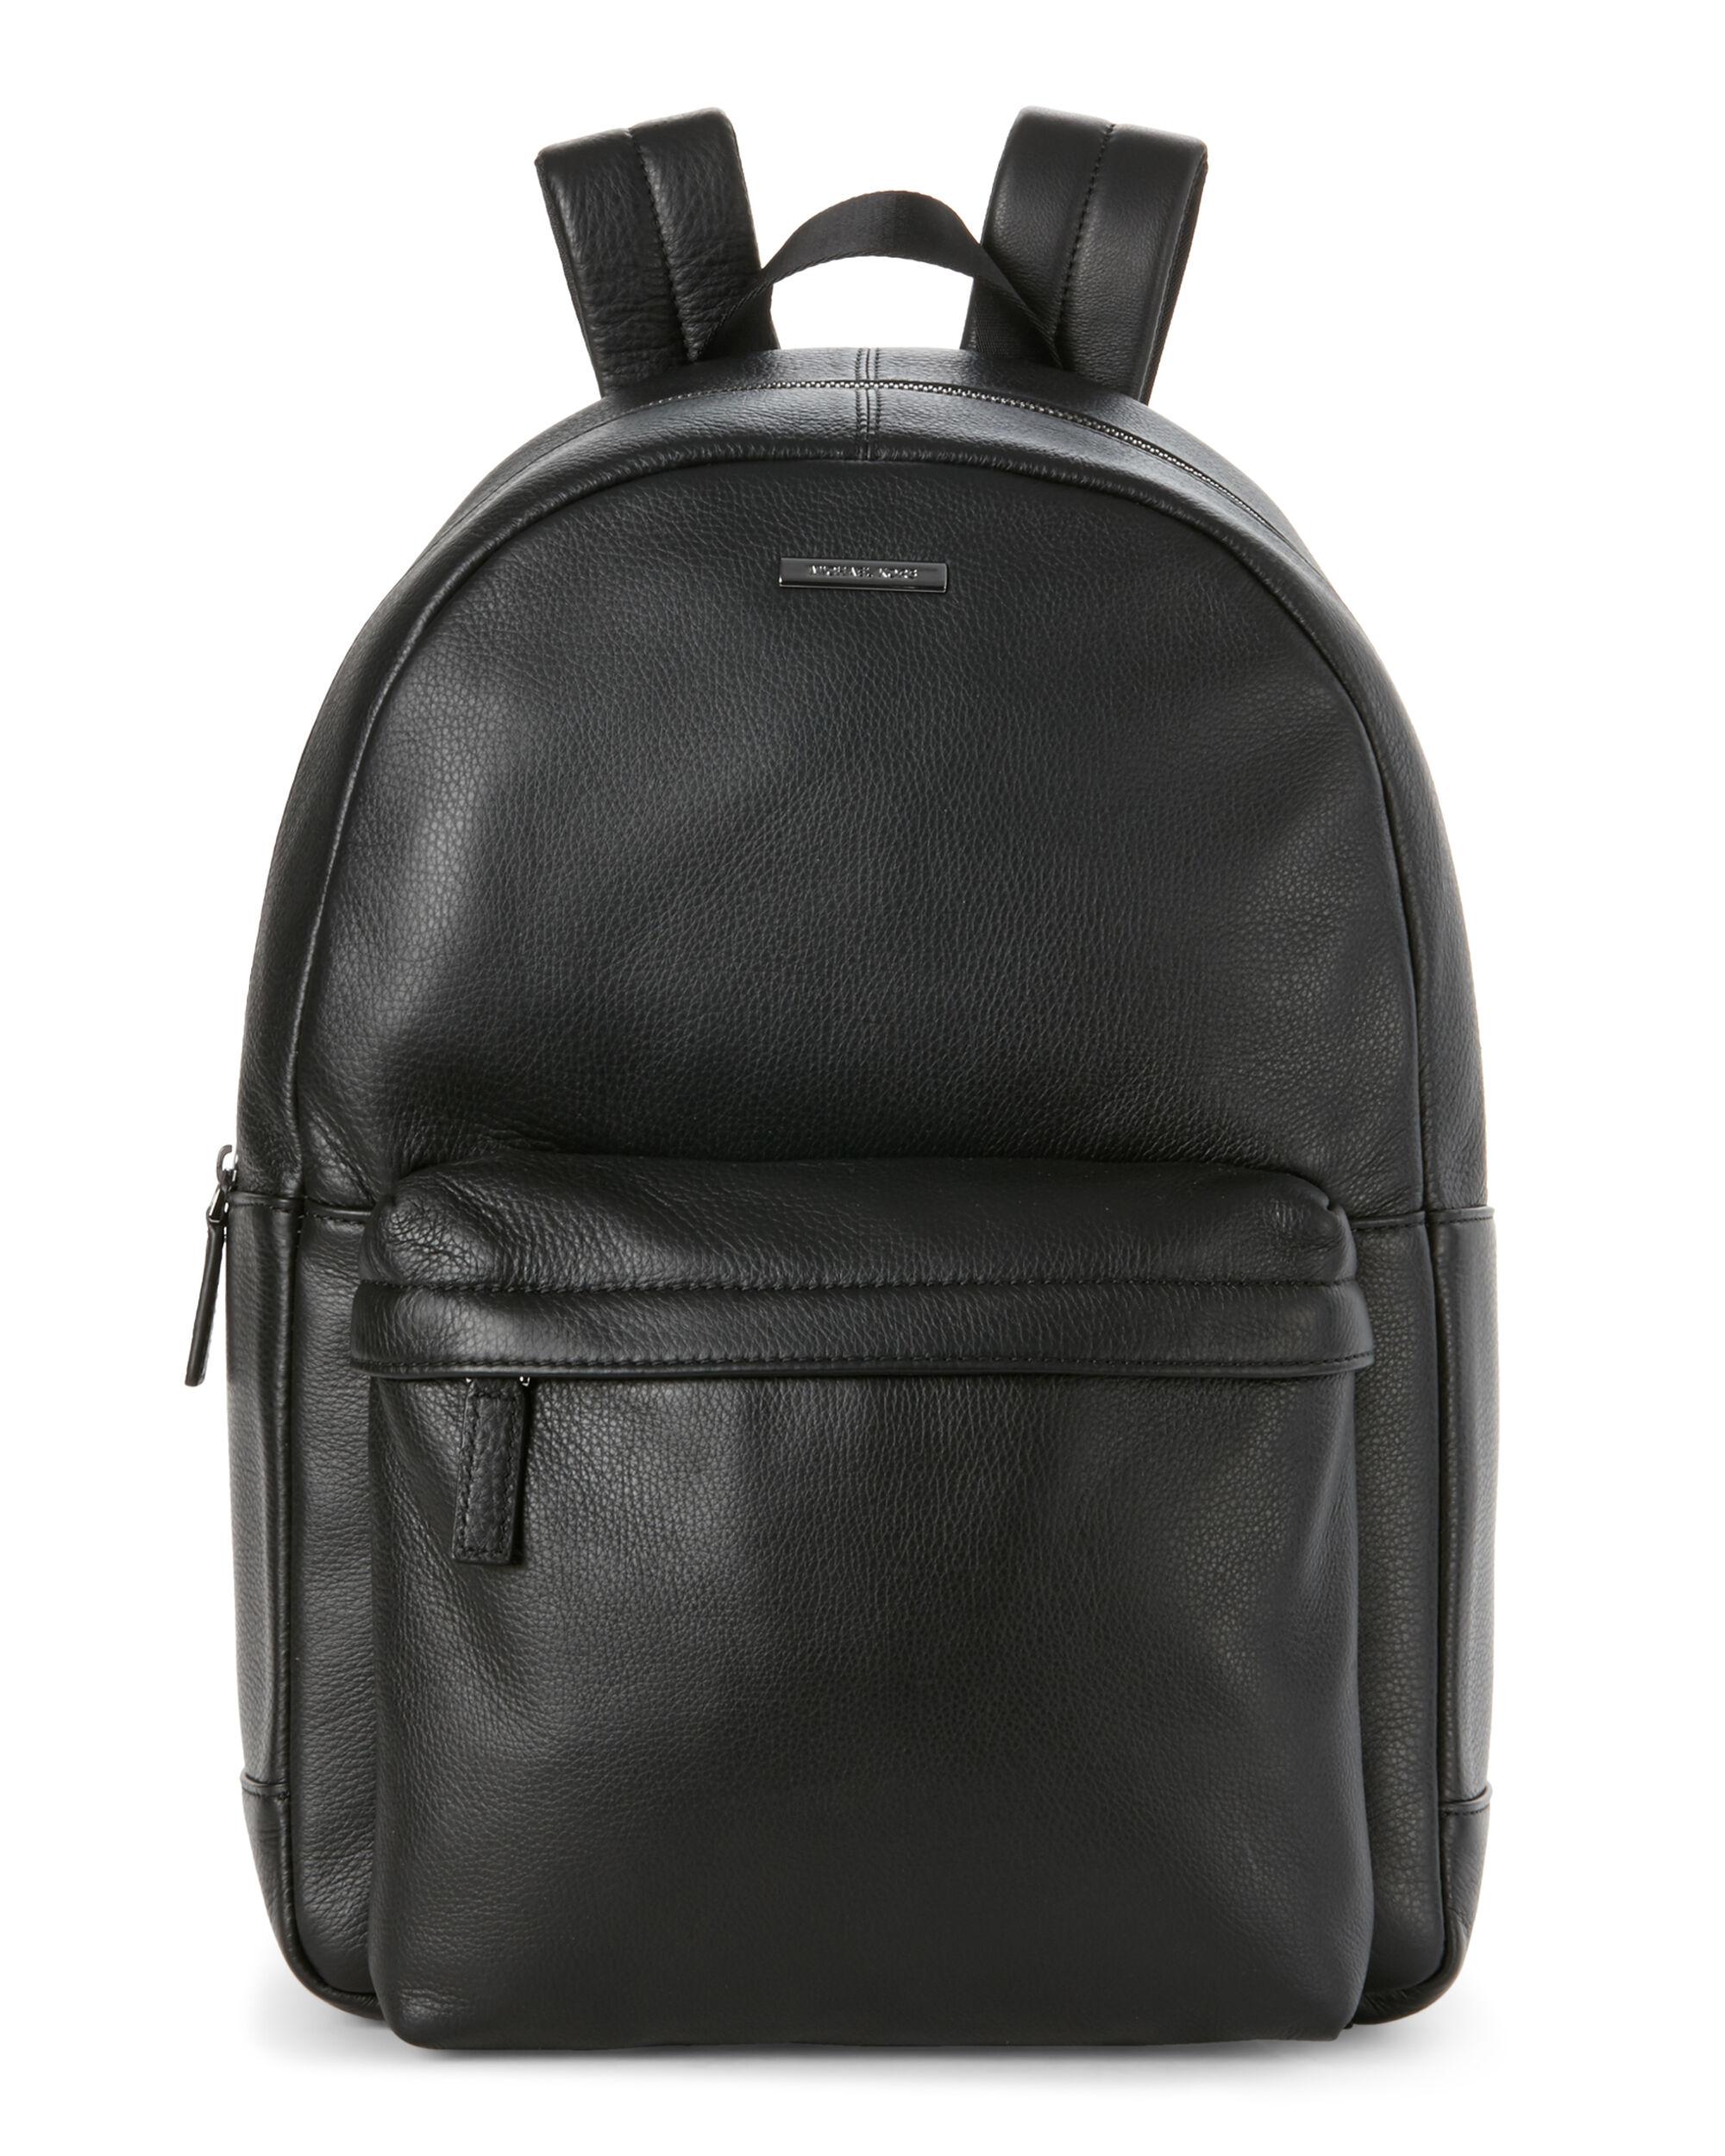 Michael Kors Stephen Leather Backpack in Black for Men - Lyst